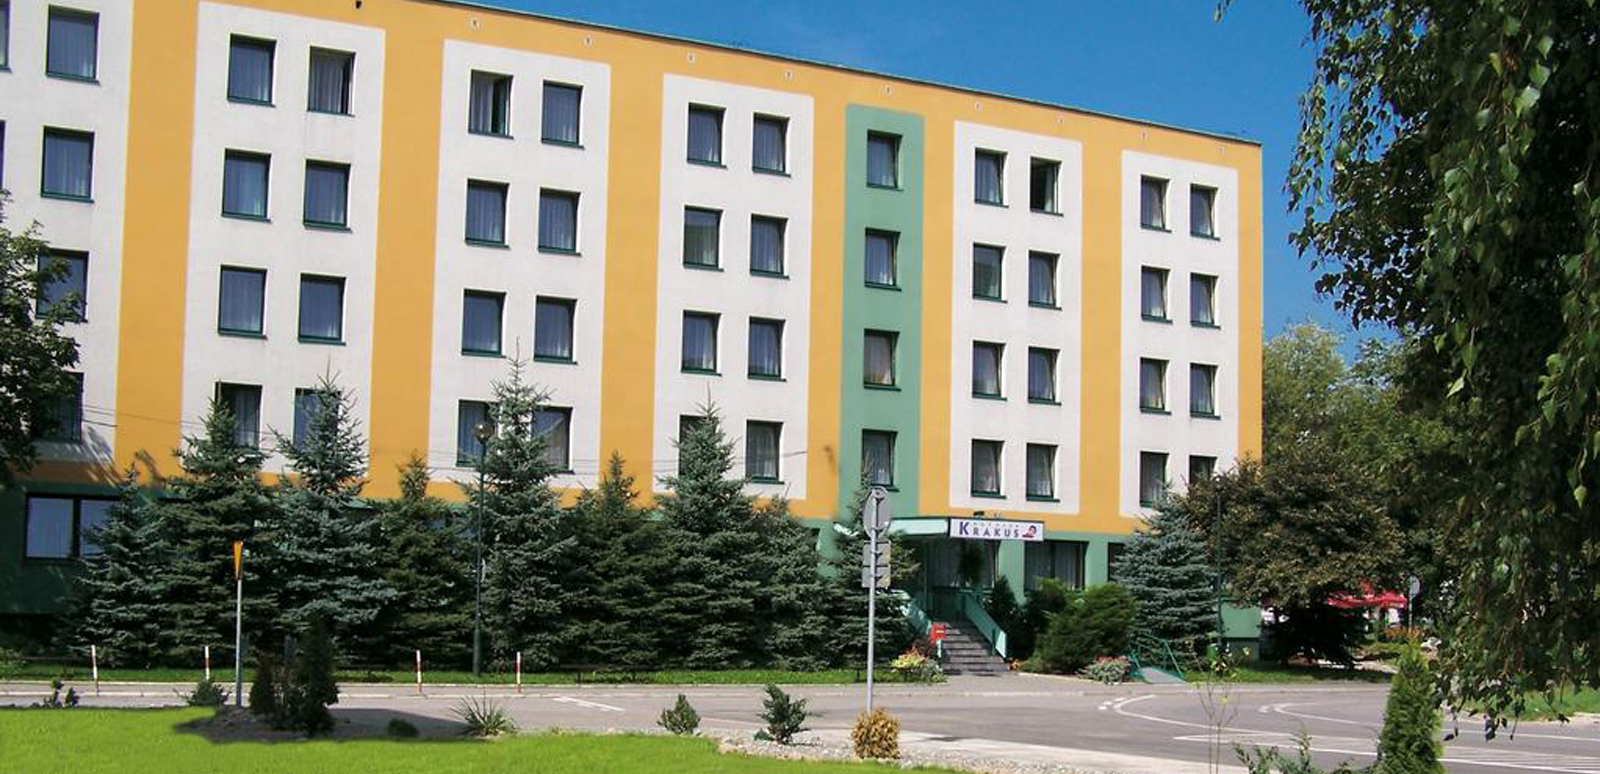 KRAKUS hotel Krakow ubytovanie reštaurácia dovolenka aquapark v Krakove